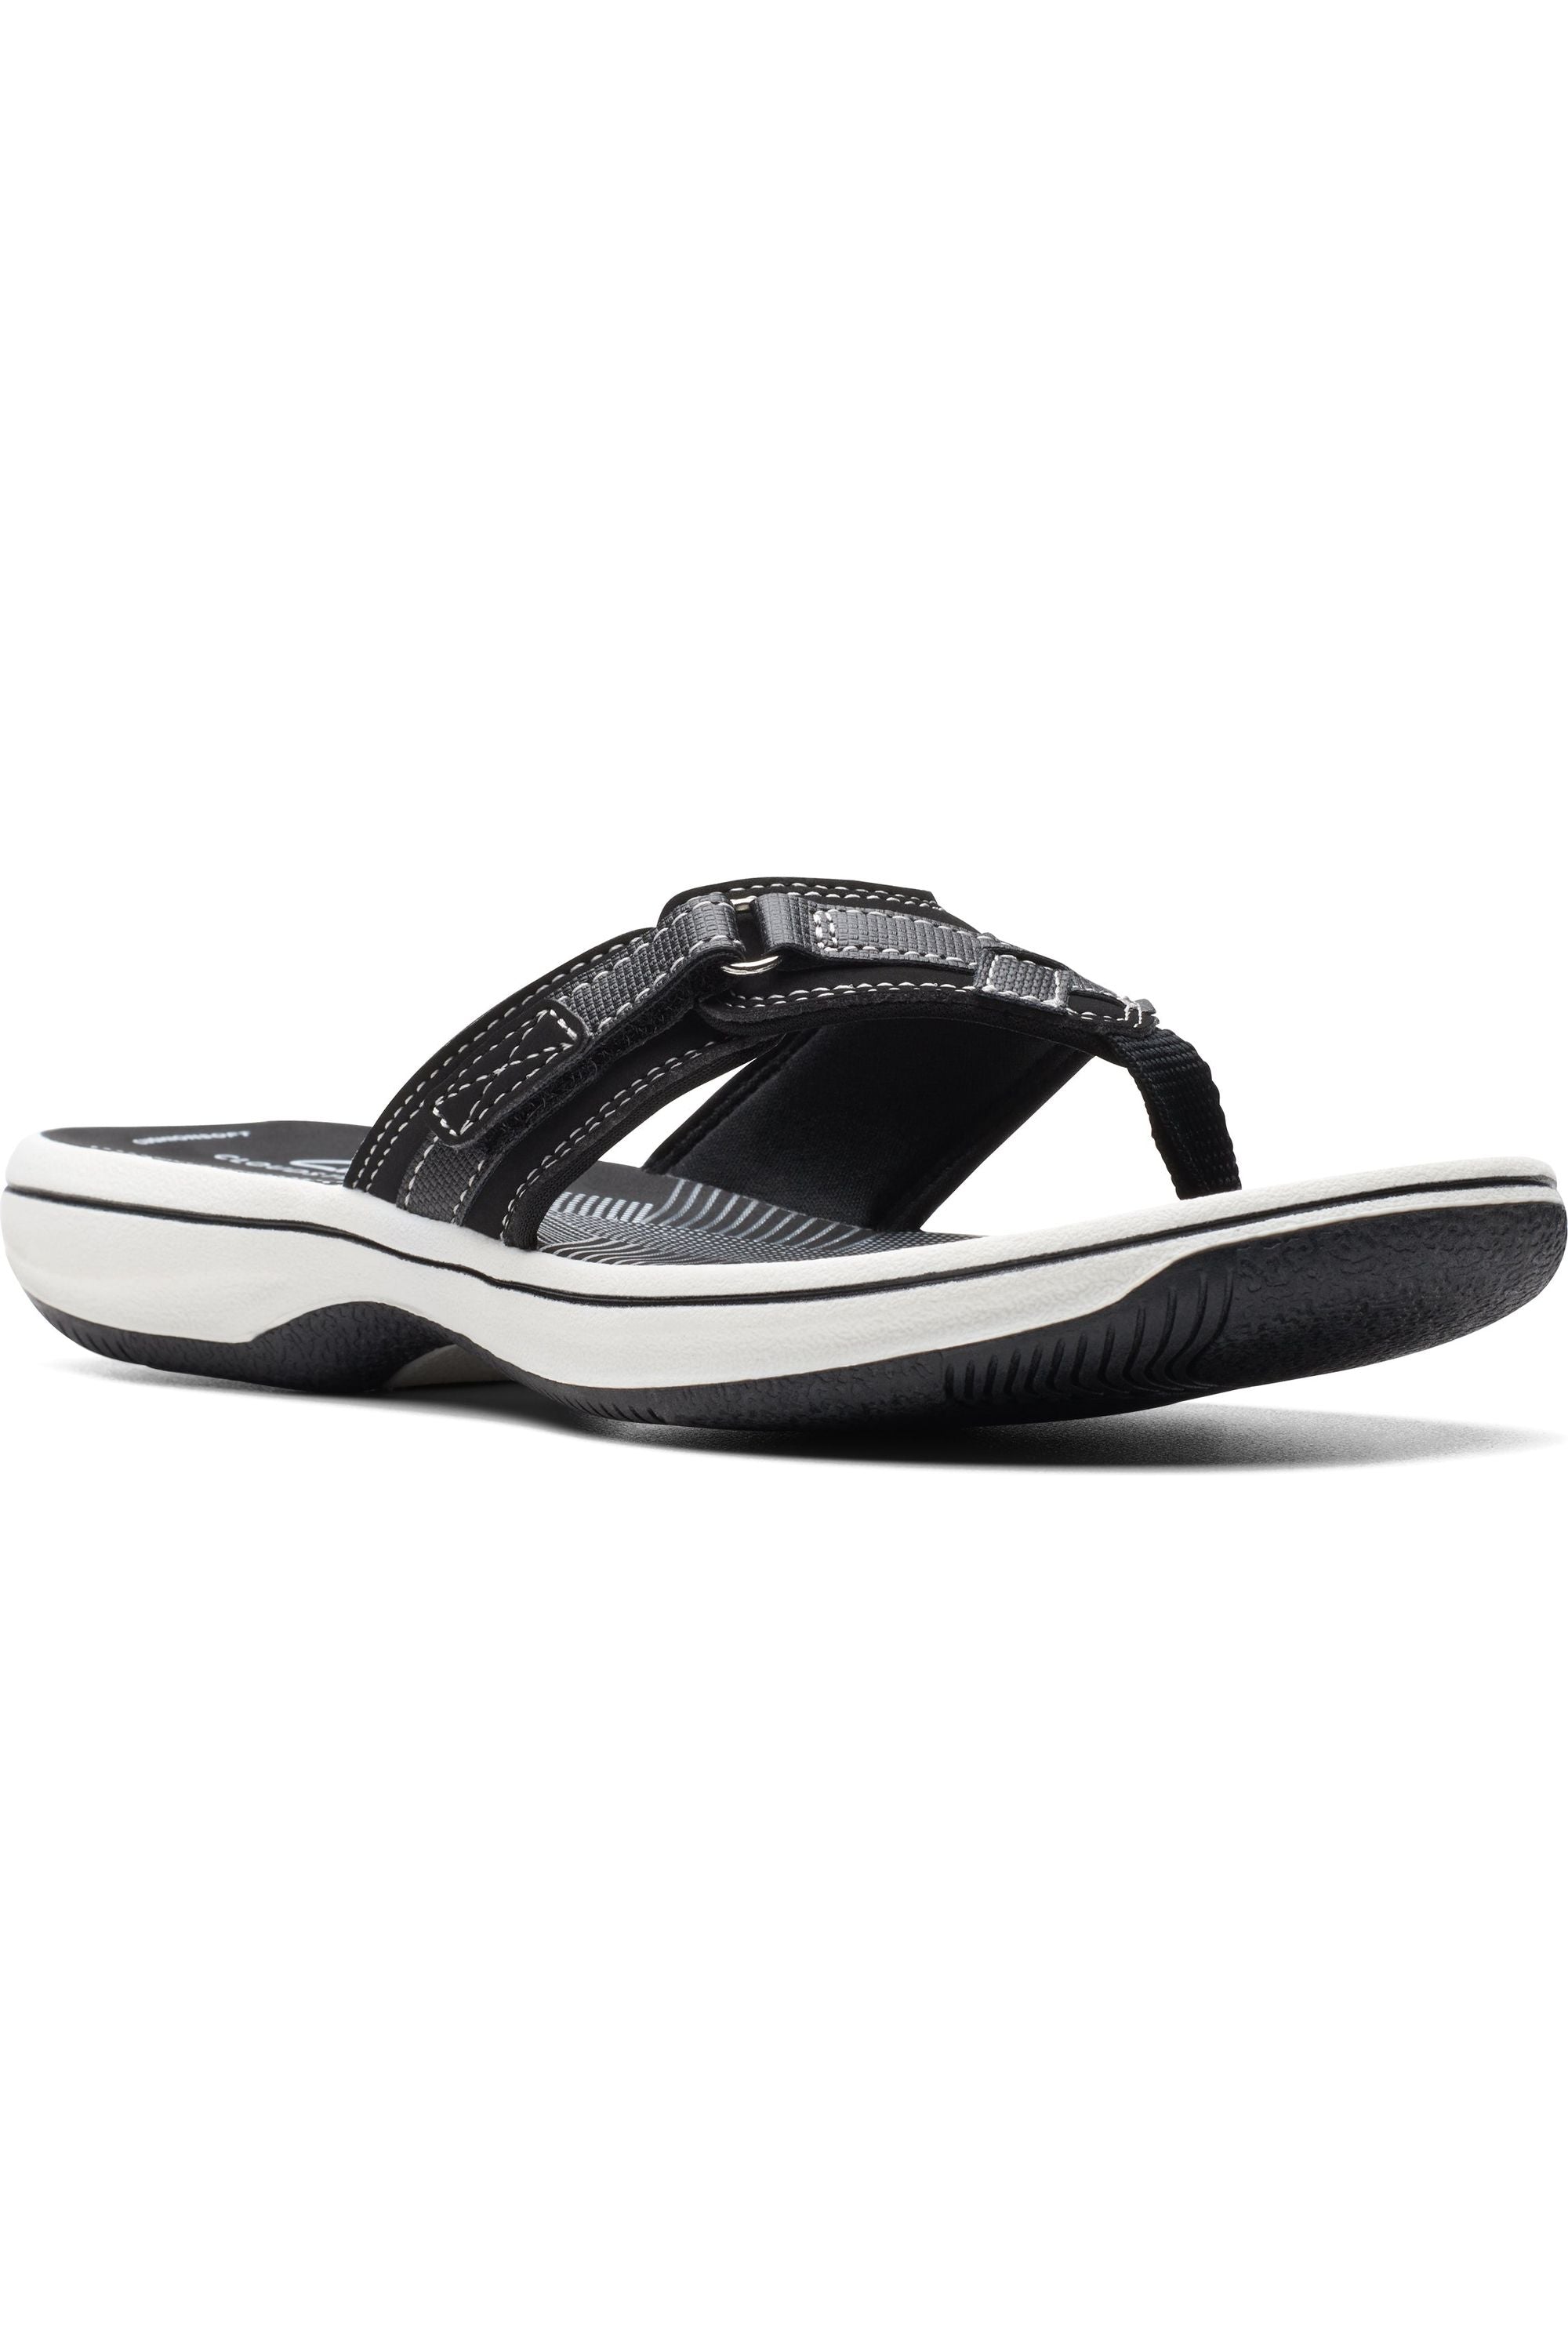 Clarks Brinkley Sea toe-post sandal in Black